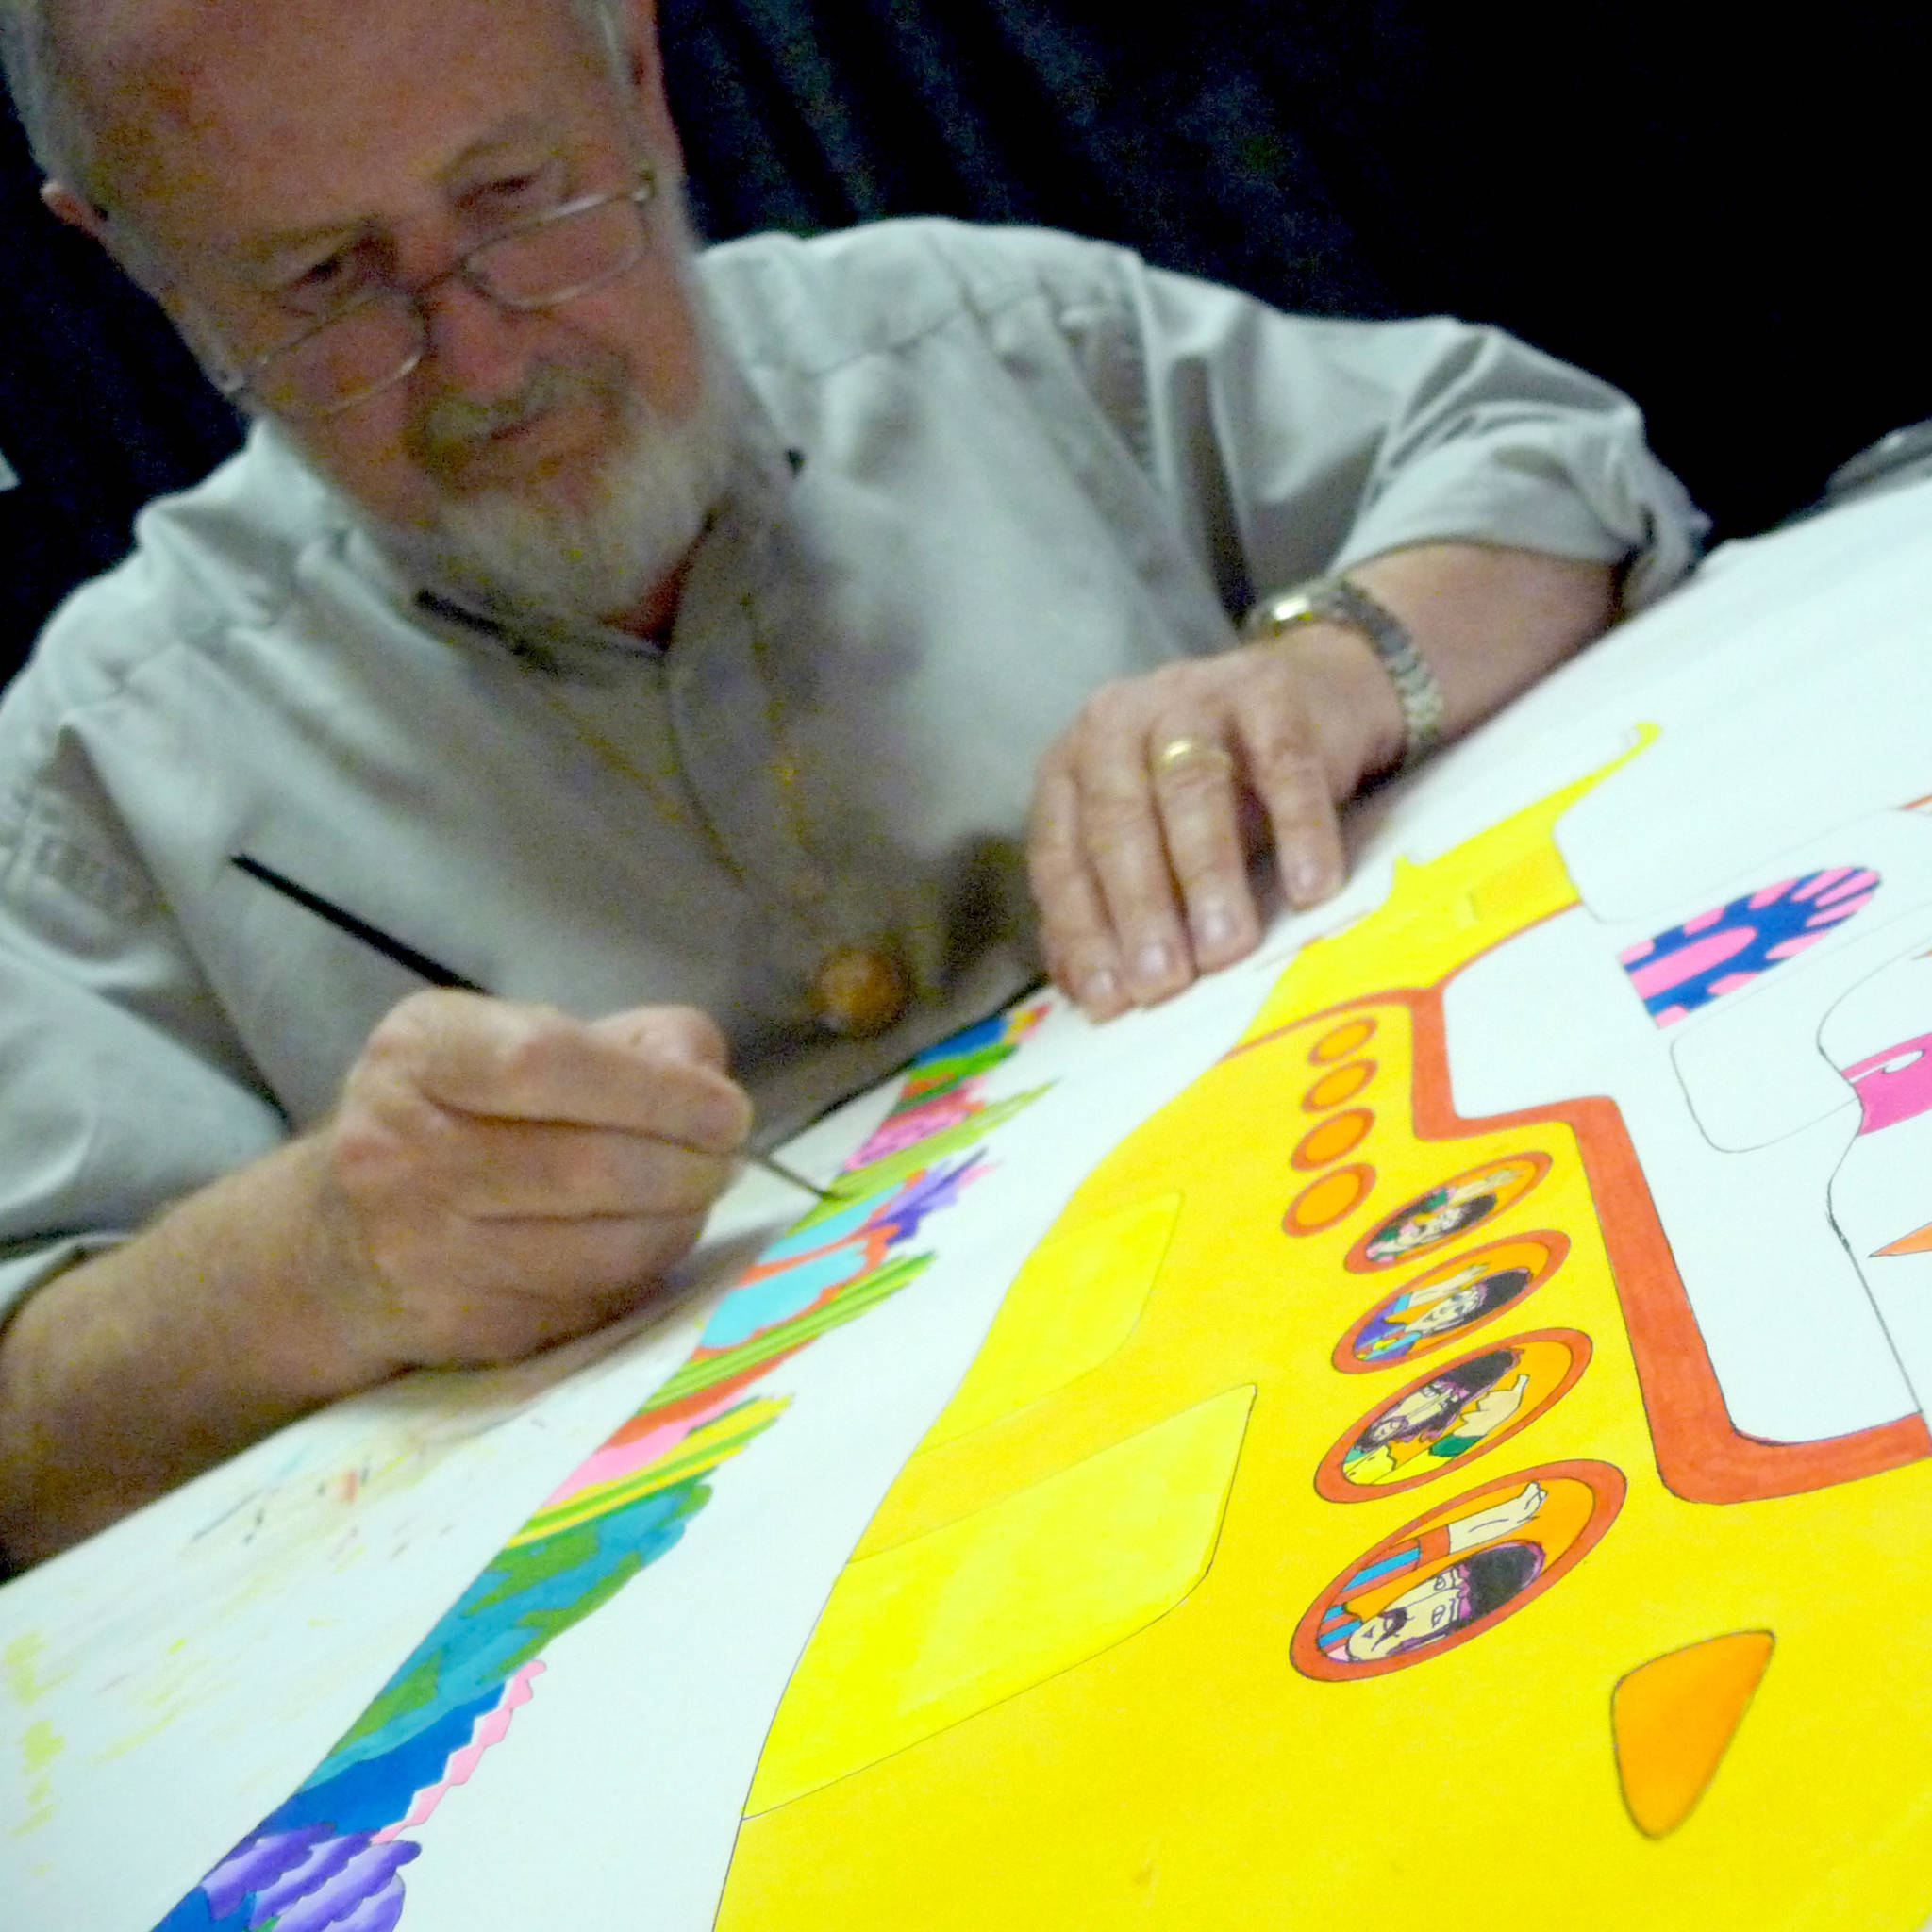 Beatles animator Ron Campbell brings artwork to Bellevue next week